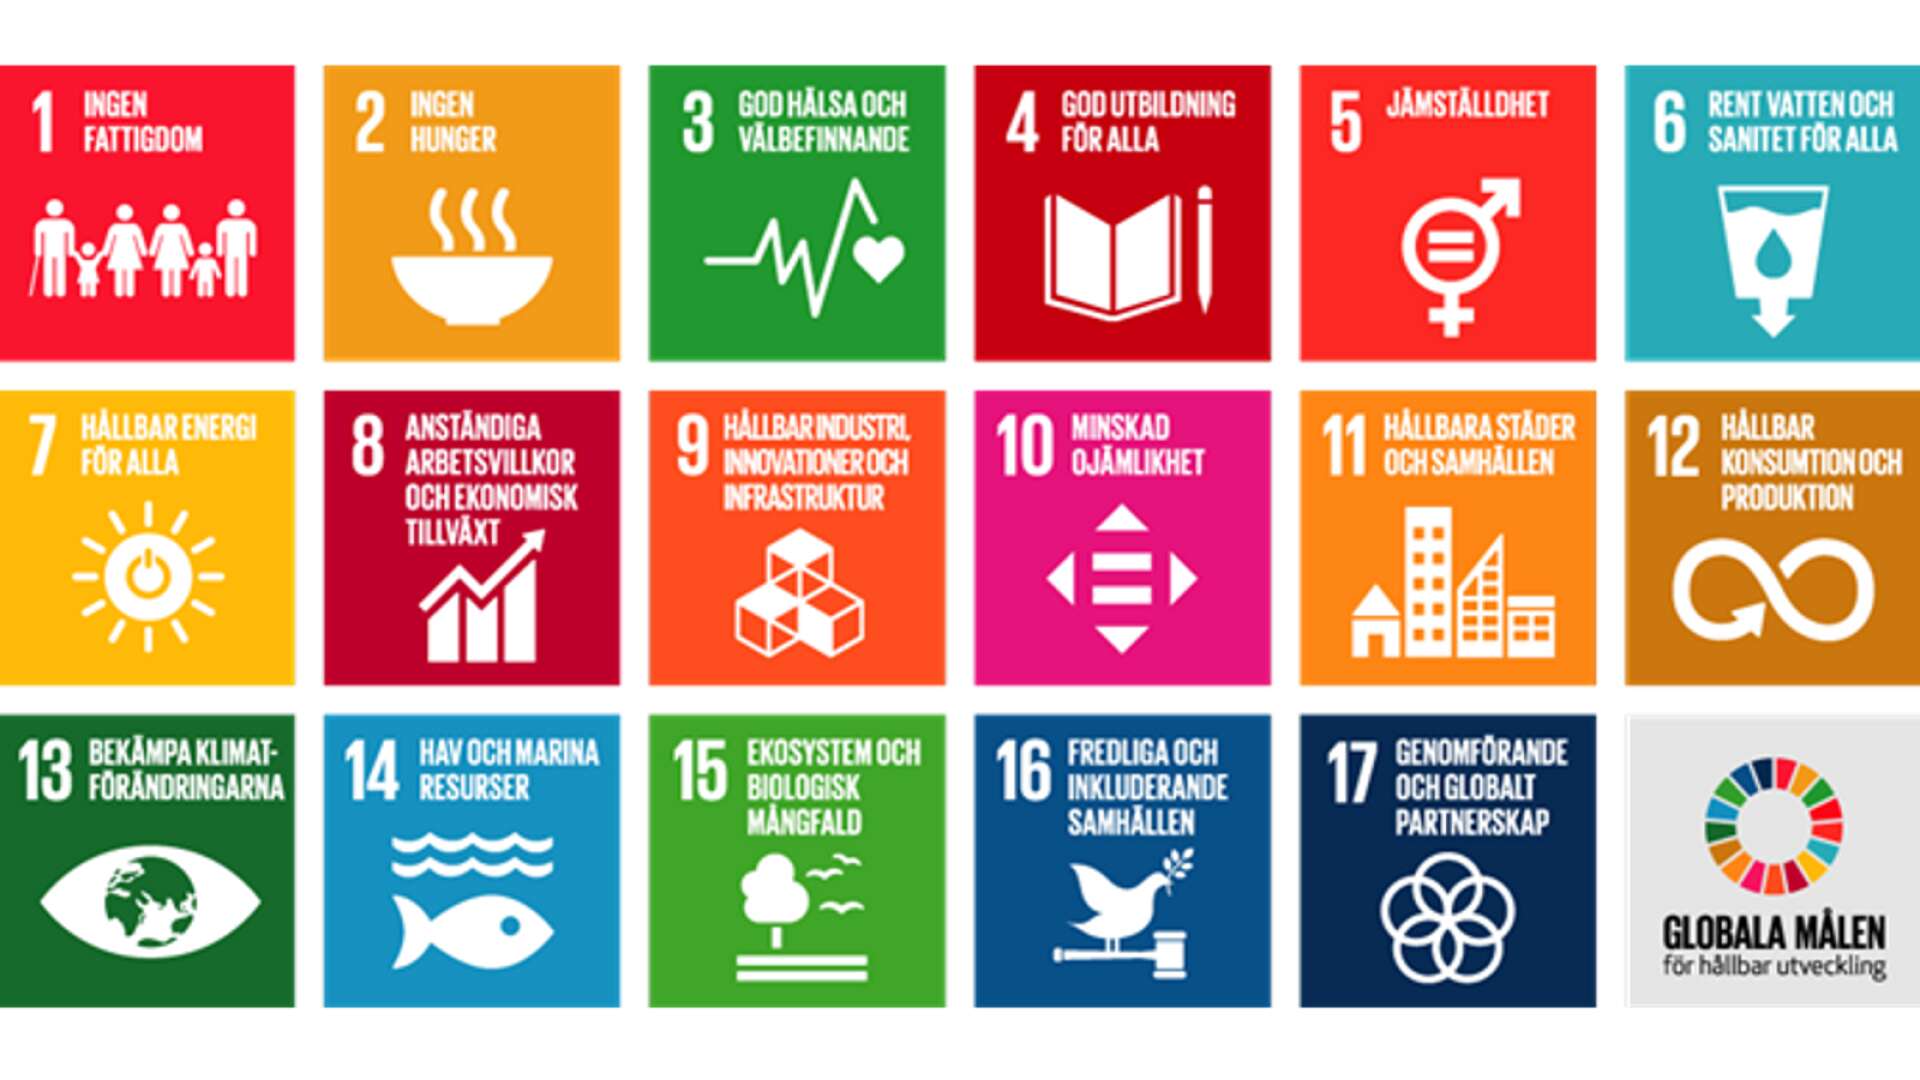 FN:s 17 globala mål för hållbar utveckling.